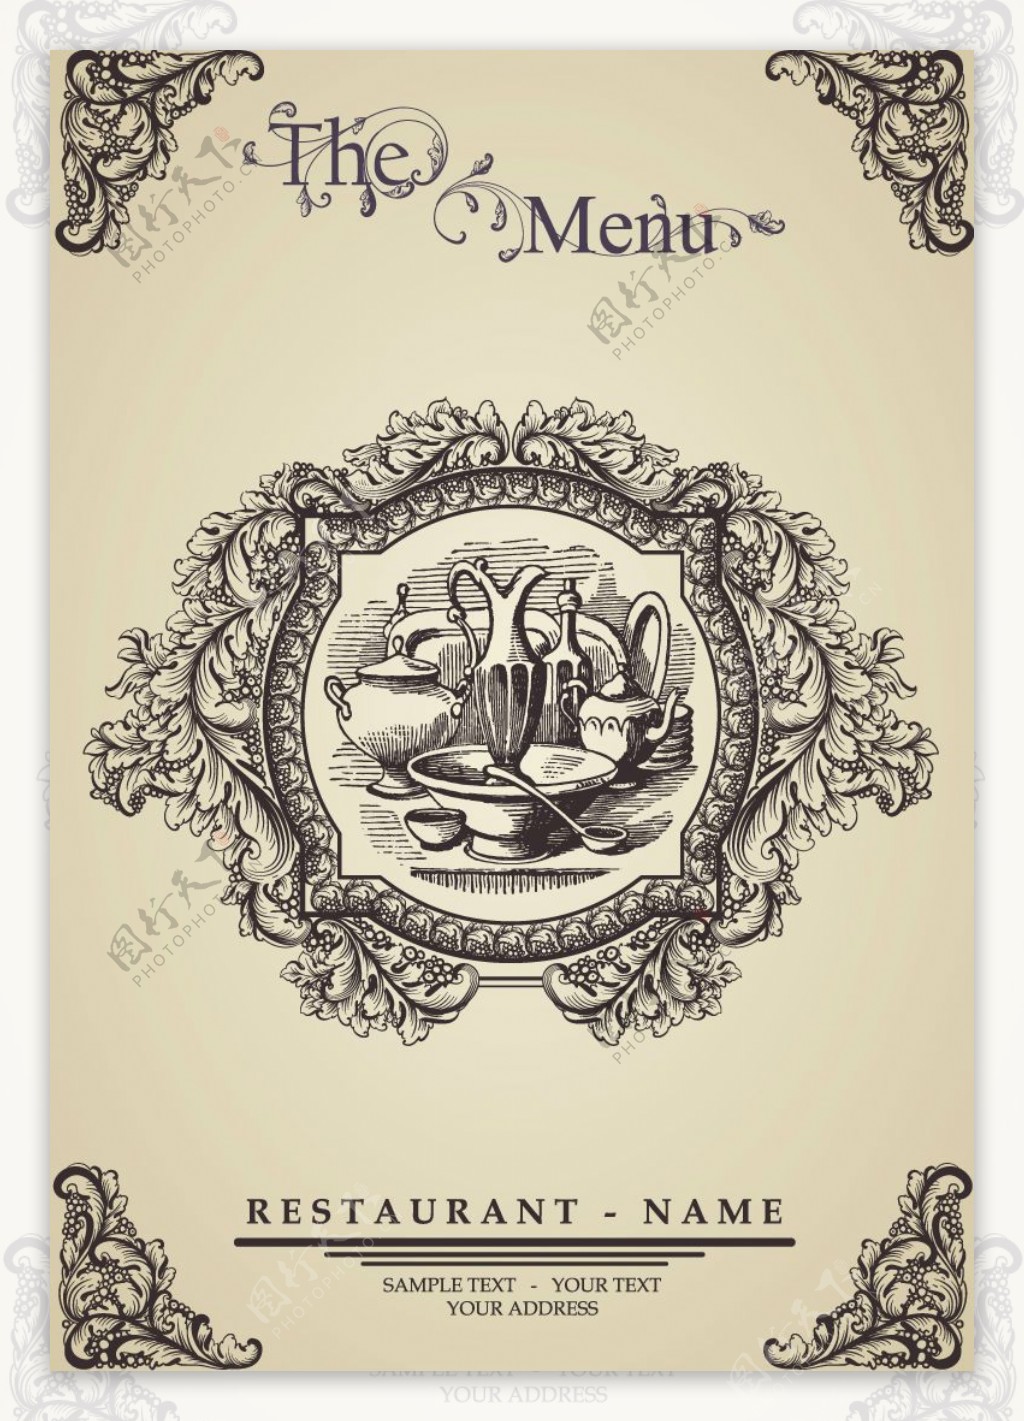 手绘餐厅菜单设计矢量素材